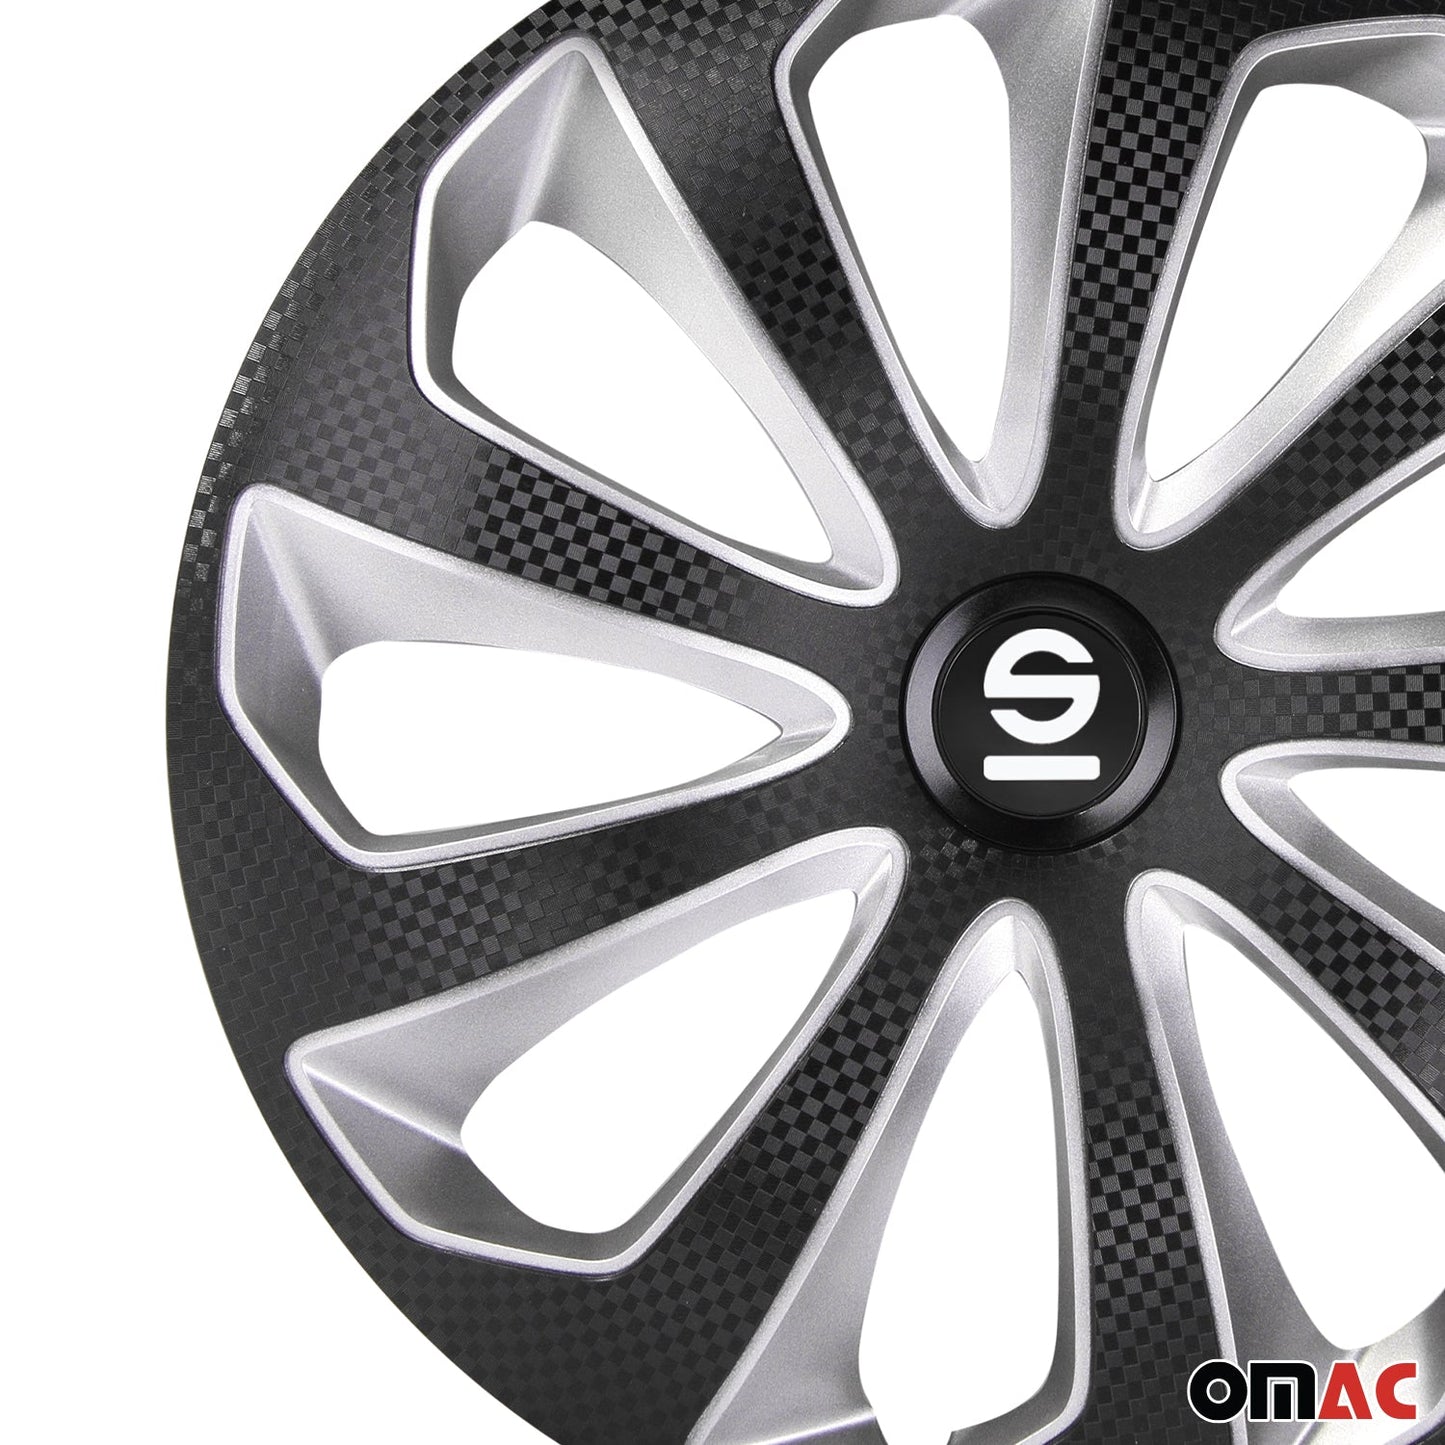 OMAC 16" Sparco Sicilia Wheel Covers Hubcaps Black Silver 4 Pcs 96SPC1675BKSVC